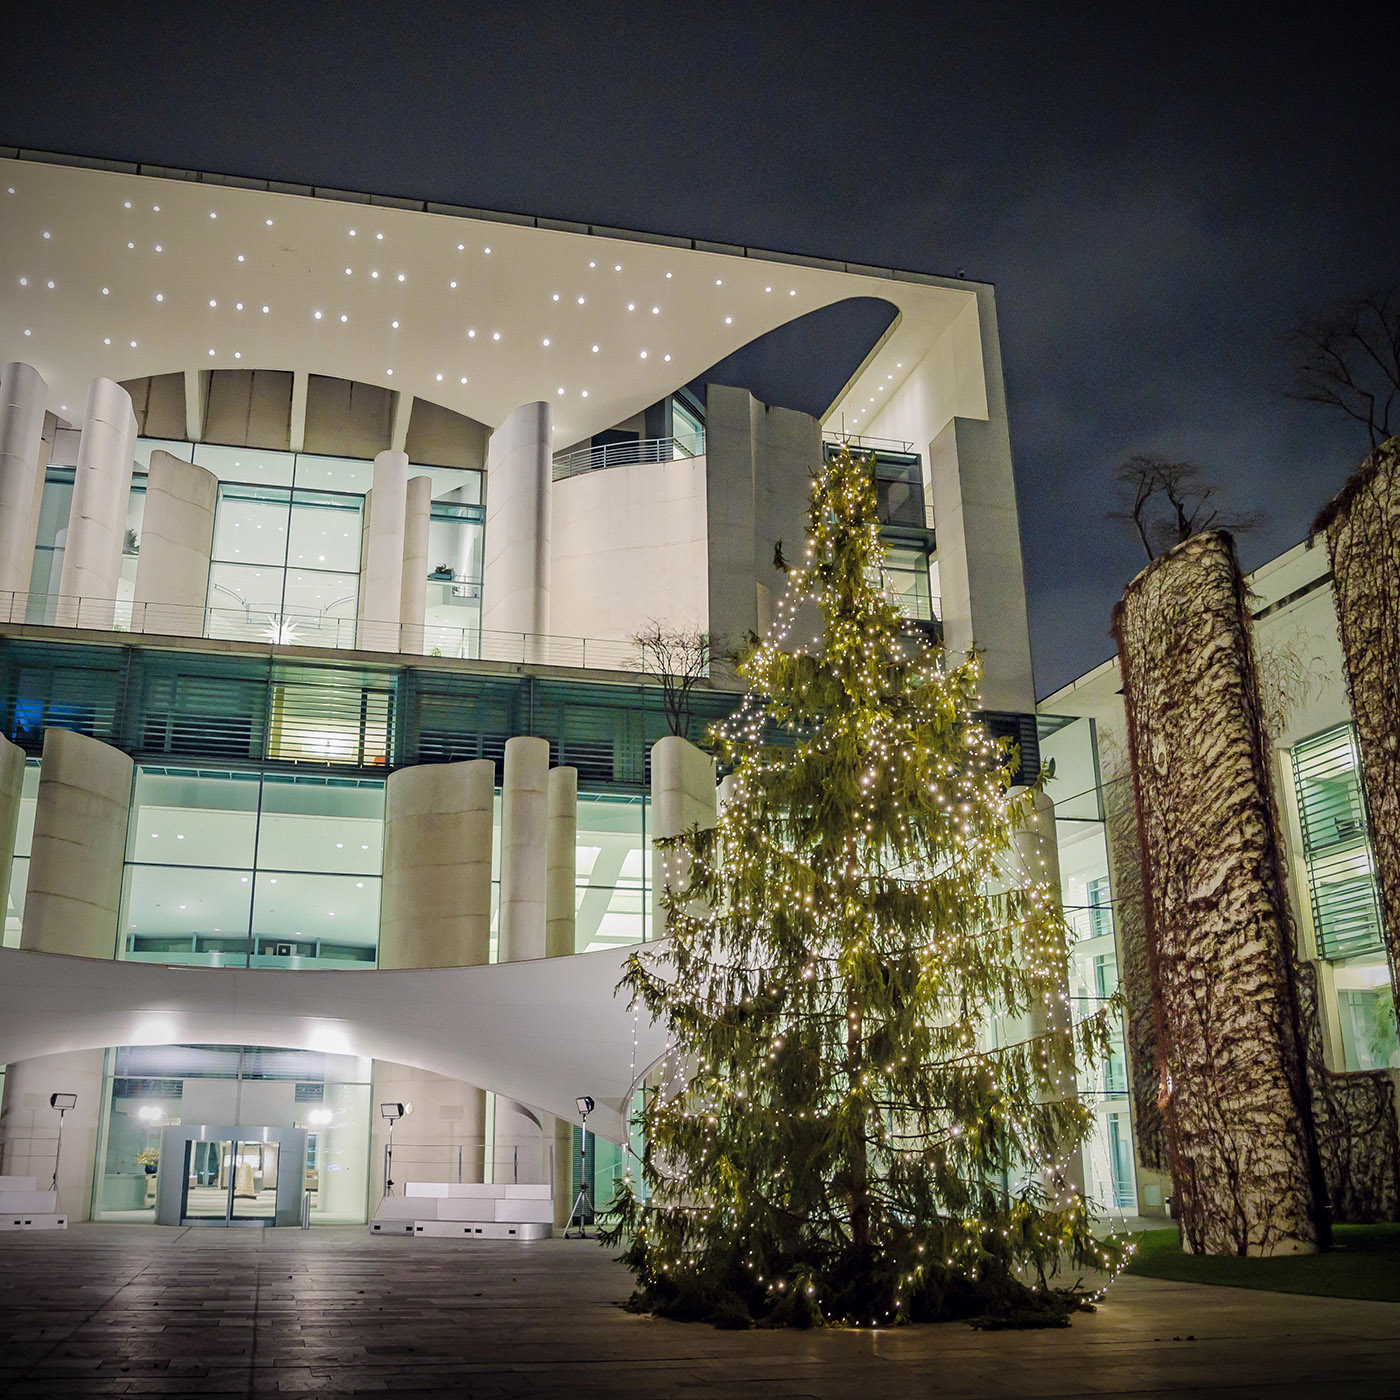 Das Bild zeigt den beleuchteten Weihnachtsbaum vor dem erhellten Kanzleramt in Berlin in der Abenddämmerung.